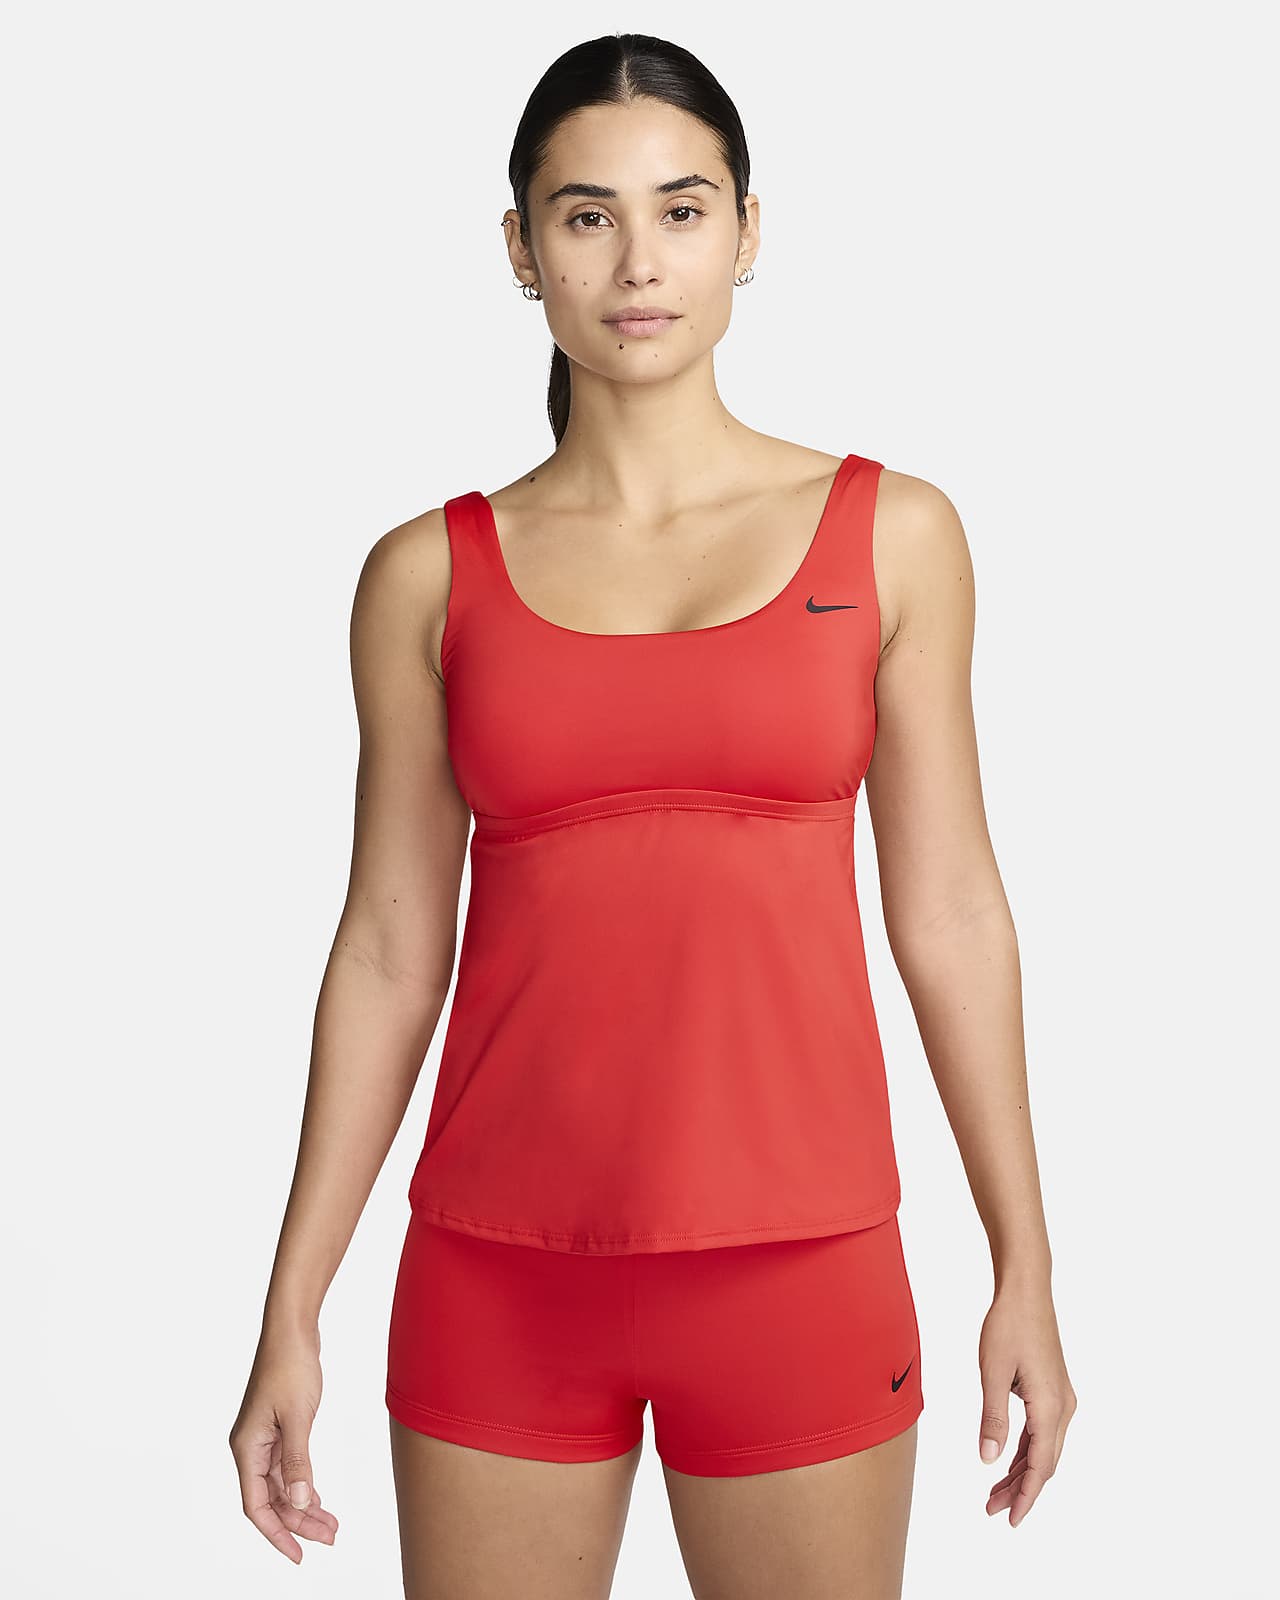 Nike Tankini Women's Swimsuit Top